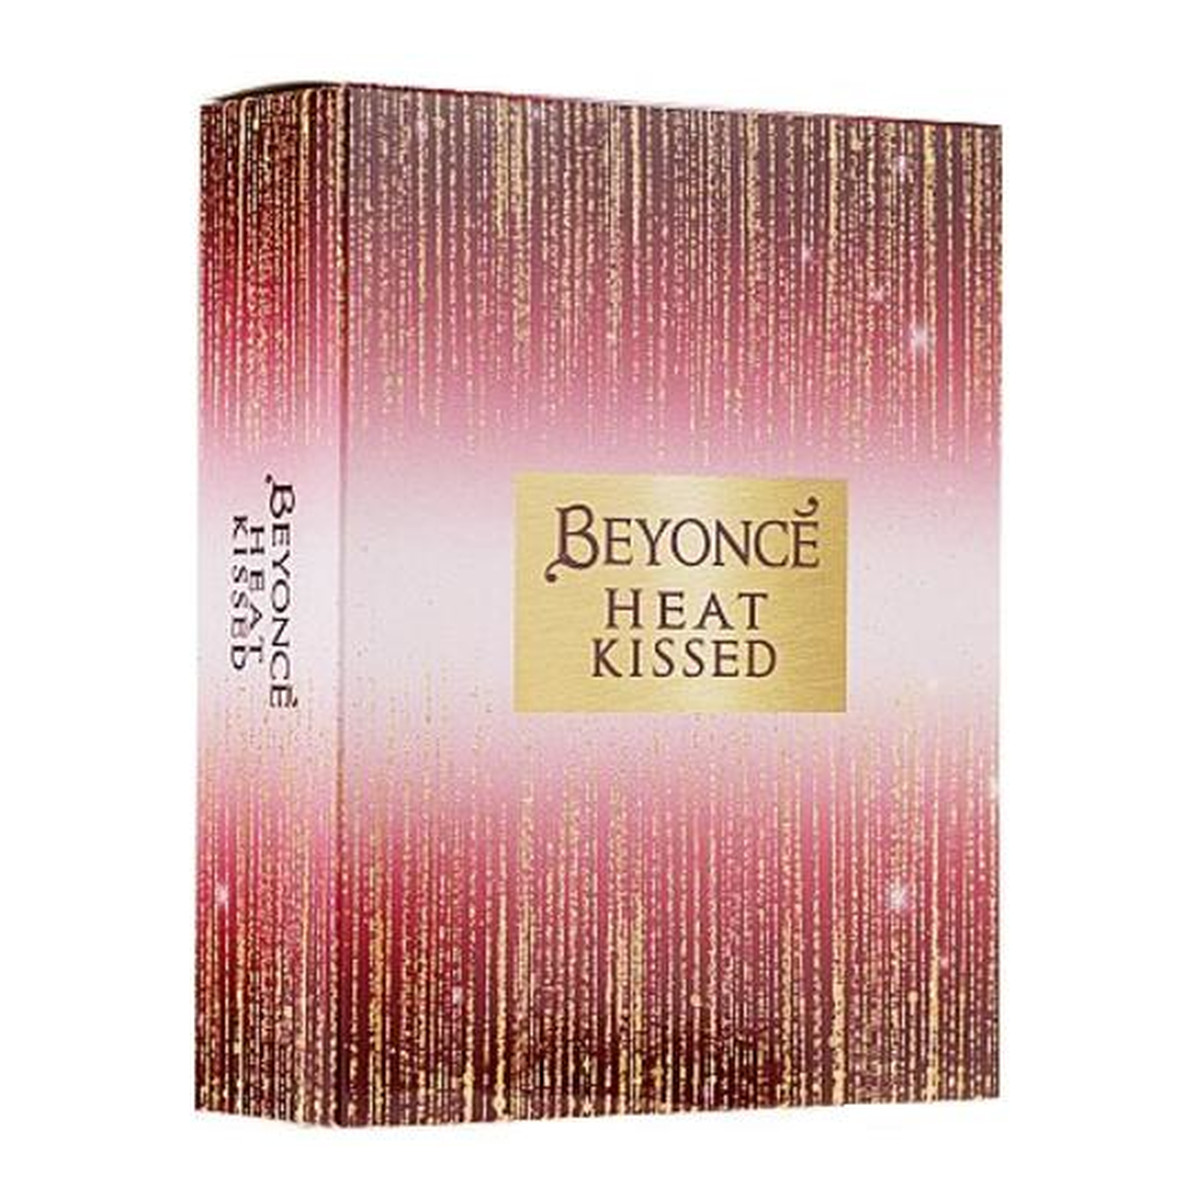 Beyonce Heat Kissed Zestaw dezodorant spray szkło 75ml + balsam do ciała 75ml